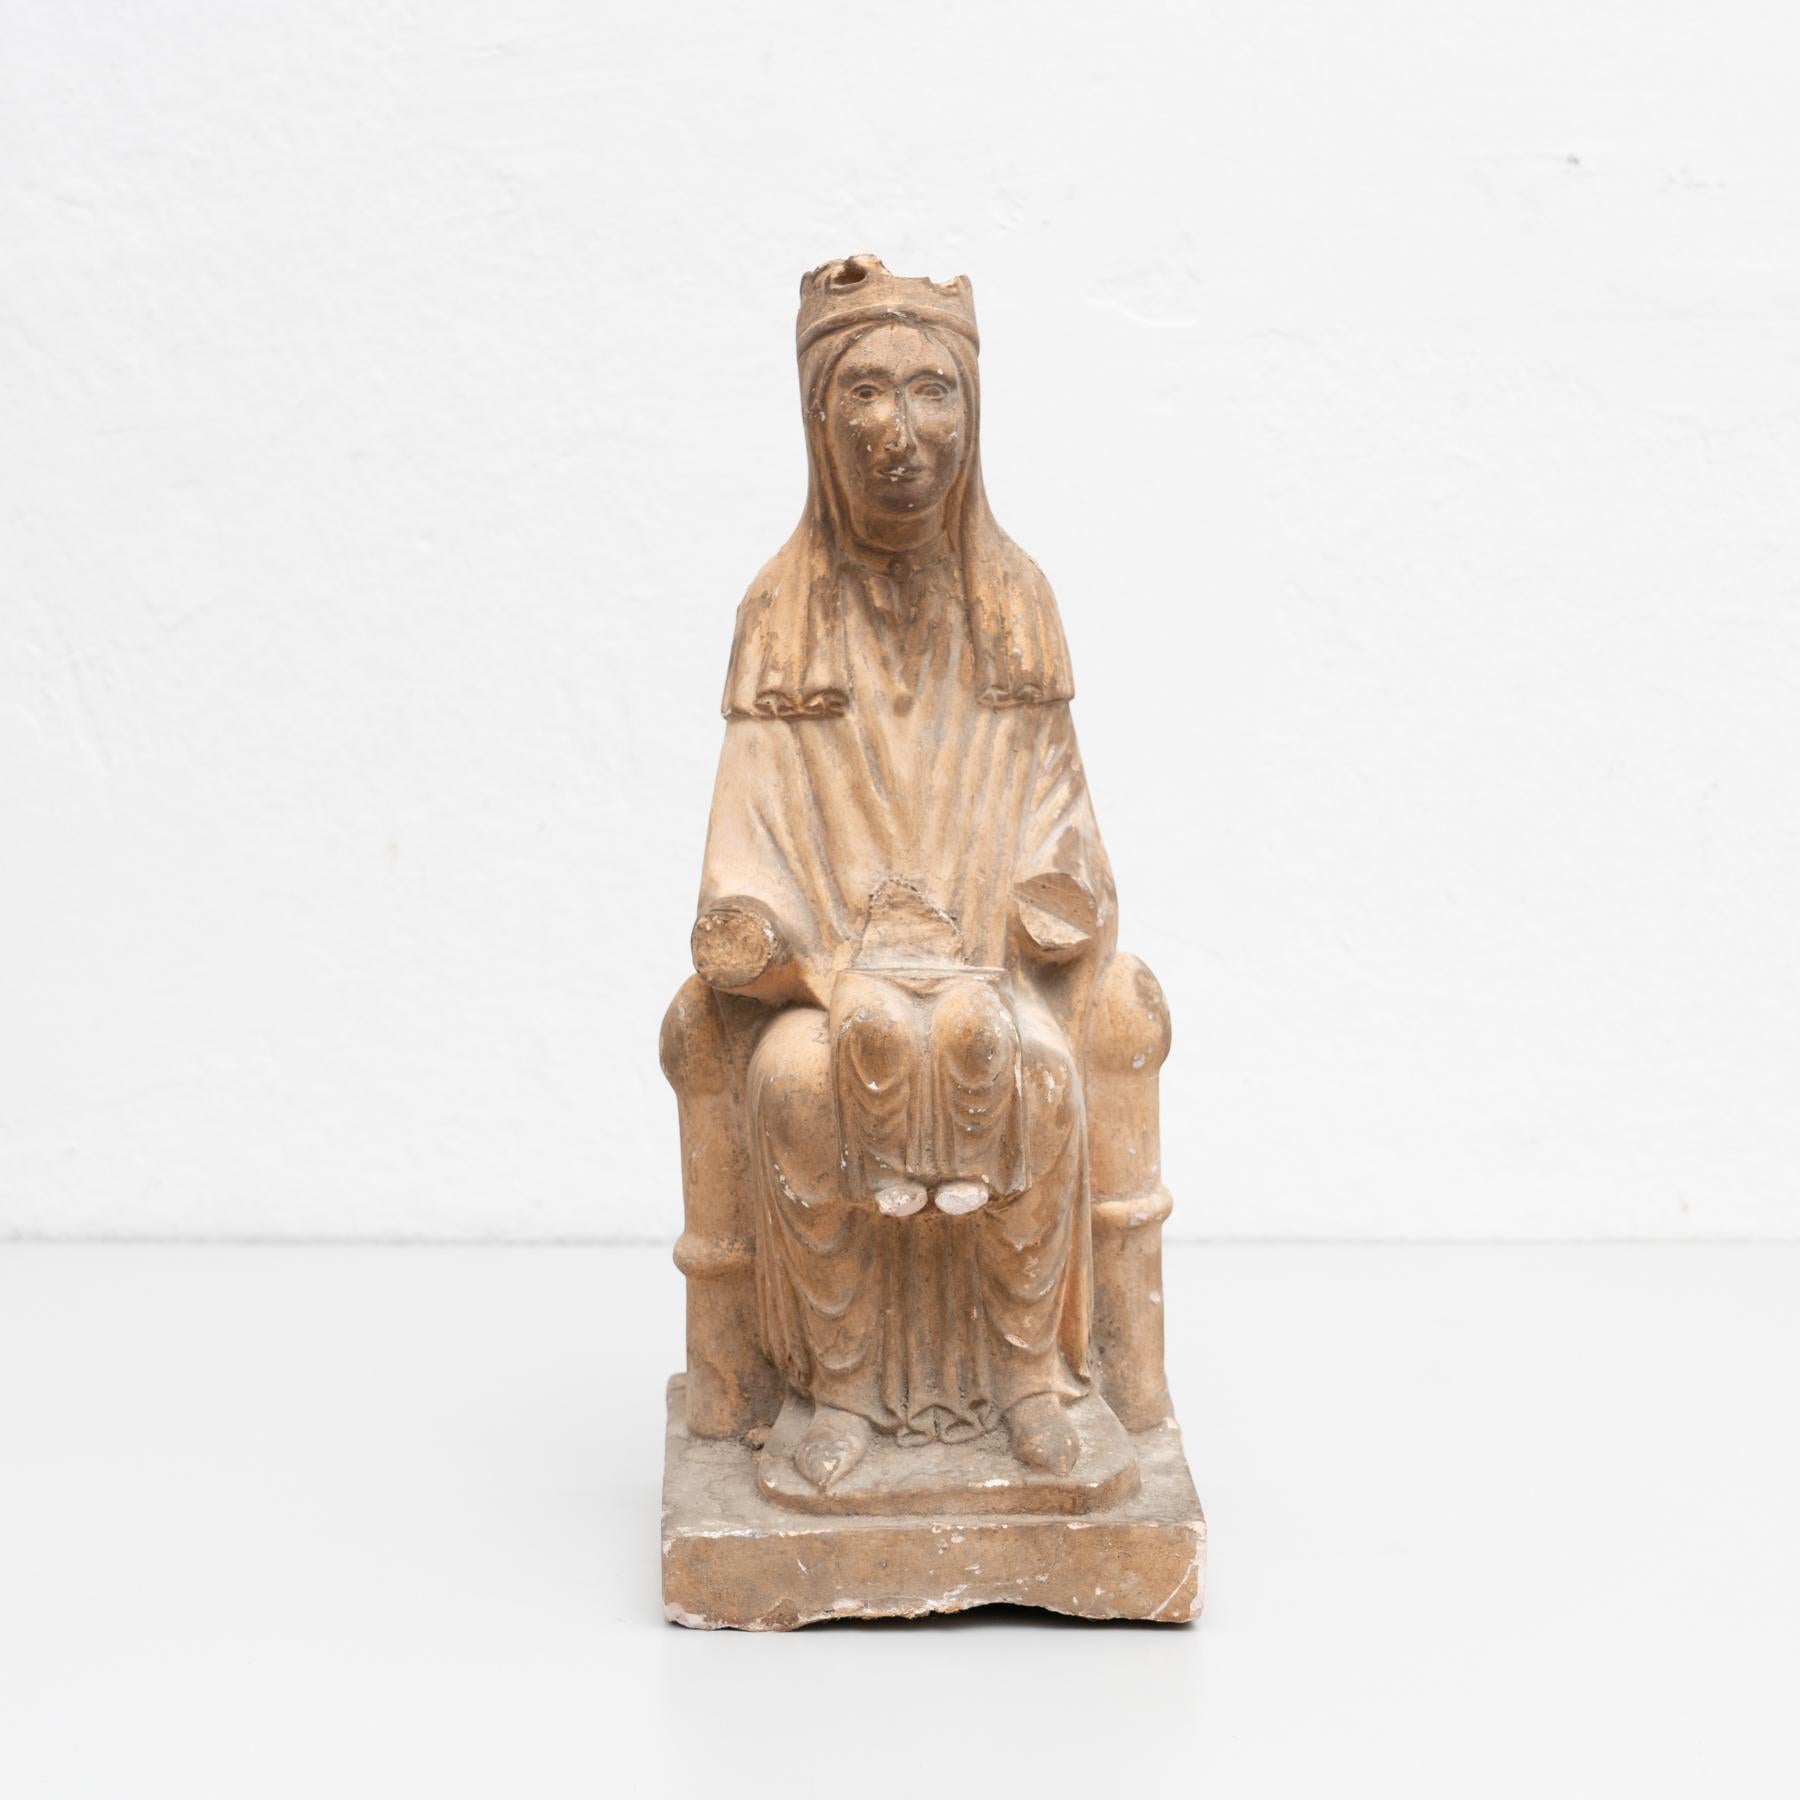 Figure religieuse traditionnelle en plâtre en forme de vierge.

Fabriqué dans un atelier traditionnel catalan d'Olot, en Espagne, vers 1950.

En état d'origine, avec une usure mineure correspondant à l'âge et à l'utilisation, préservant une